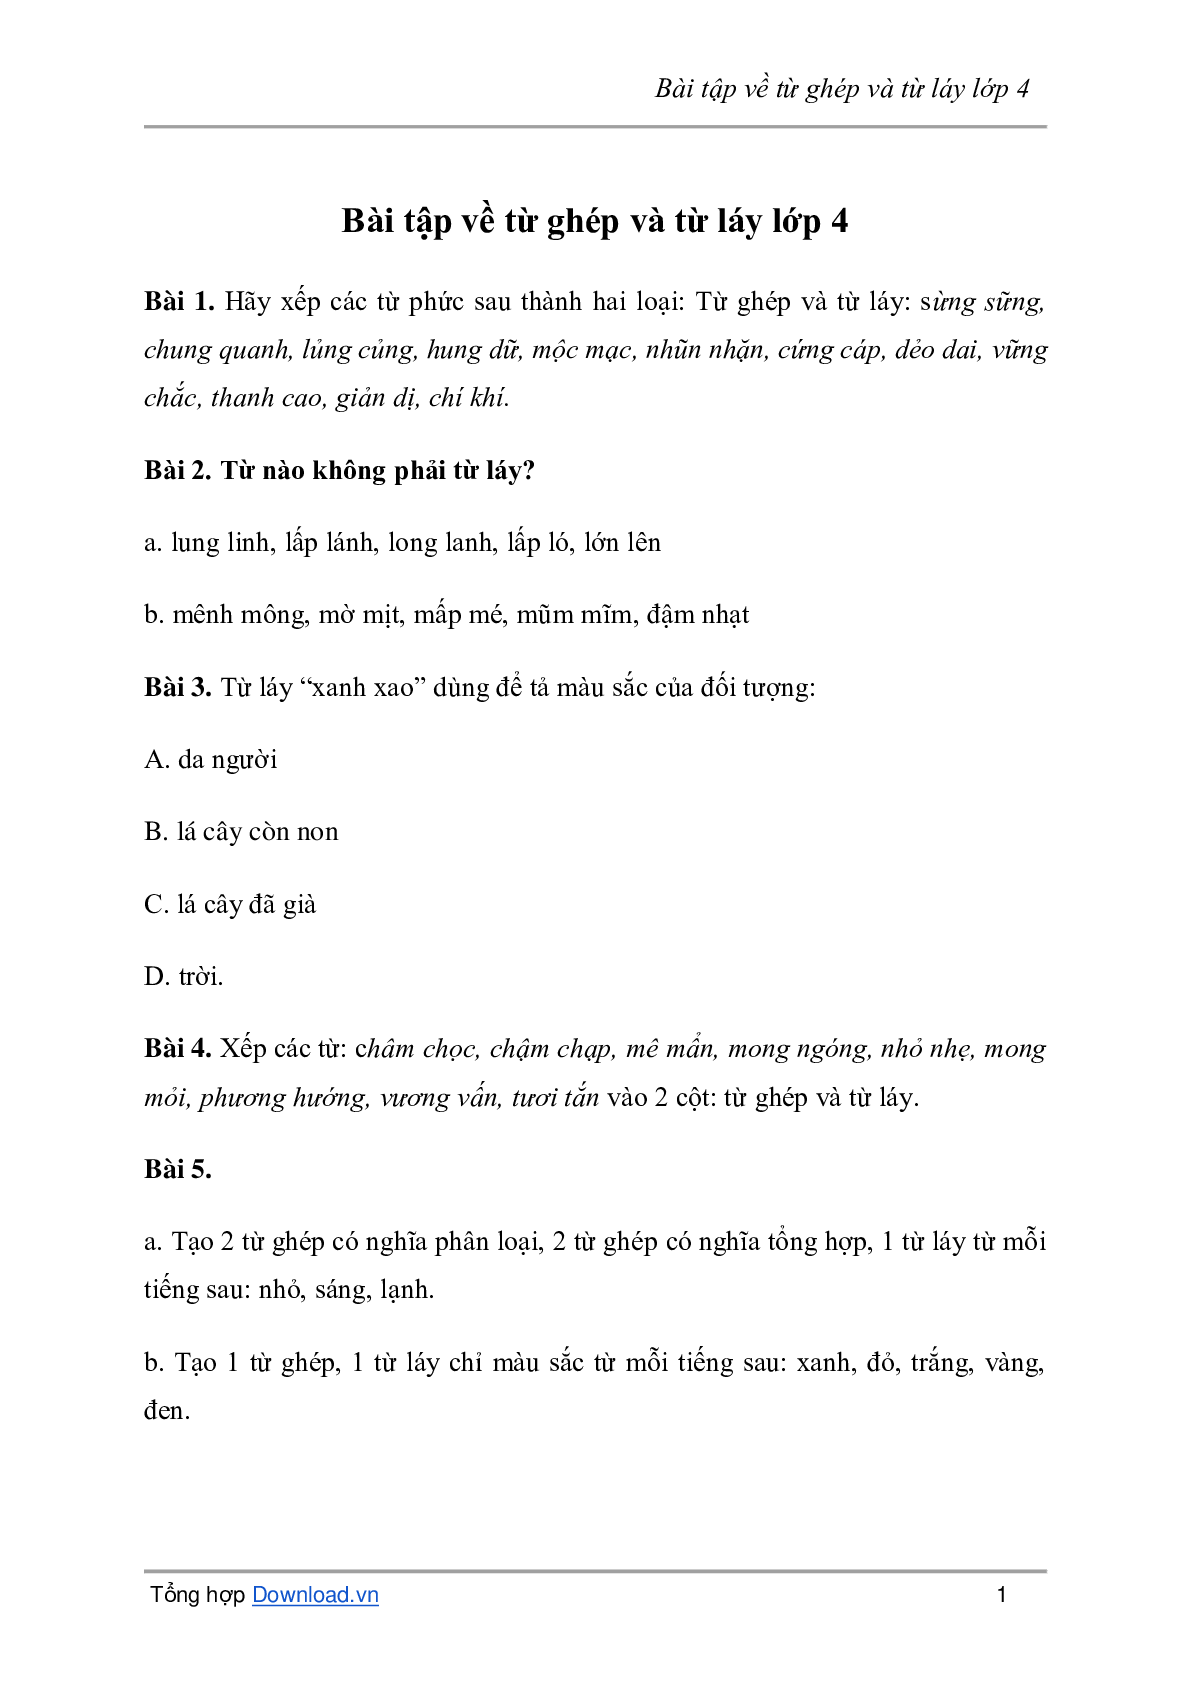 Bài tập về từ ghép và từ láy môn Tiếng Việt lớp 4 có đáp án (trang 1)